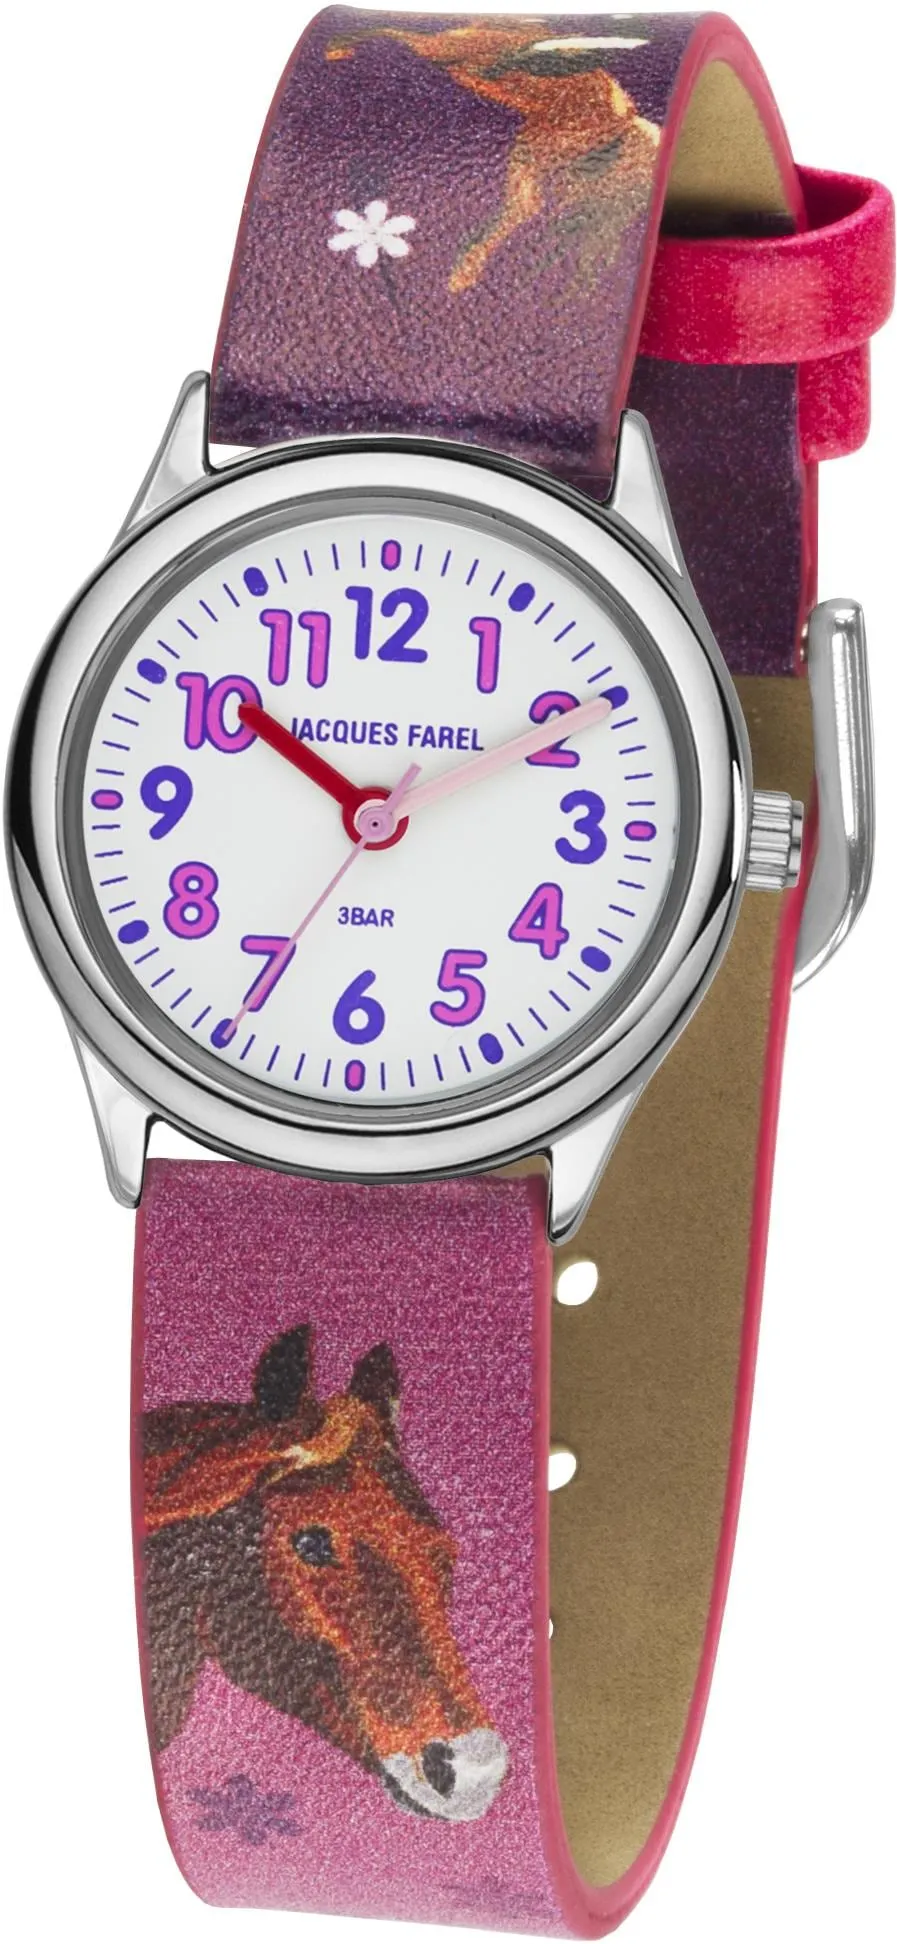 Quarzuhr JACQUES FAREL "HCC 543, mit Pferdemotiv" Armbanduhren bunt (pink, lila) Kinder Kinderuhren Armbanduhr, Kinderuhr, Mädchenuhr, ideal auch als Geschenk